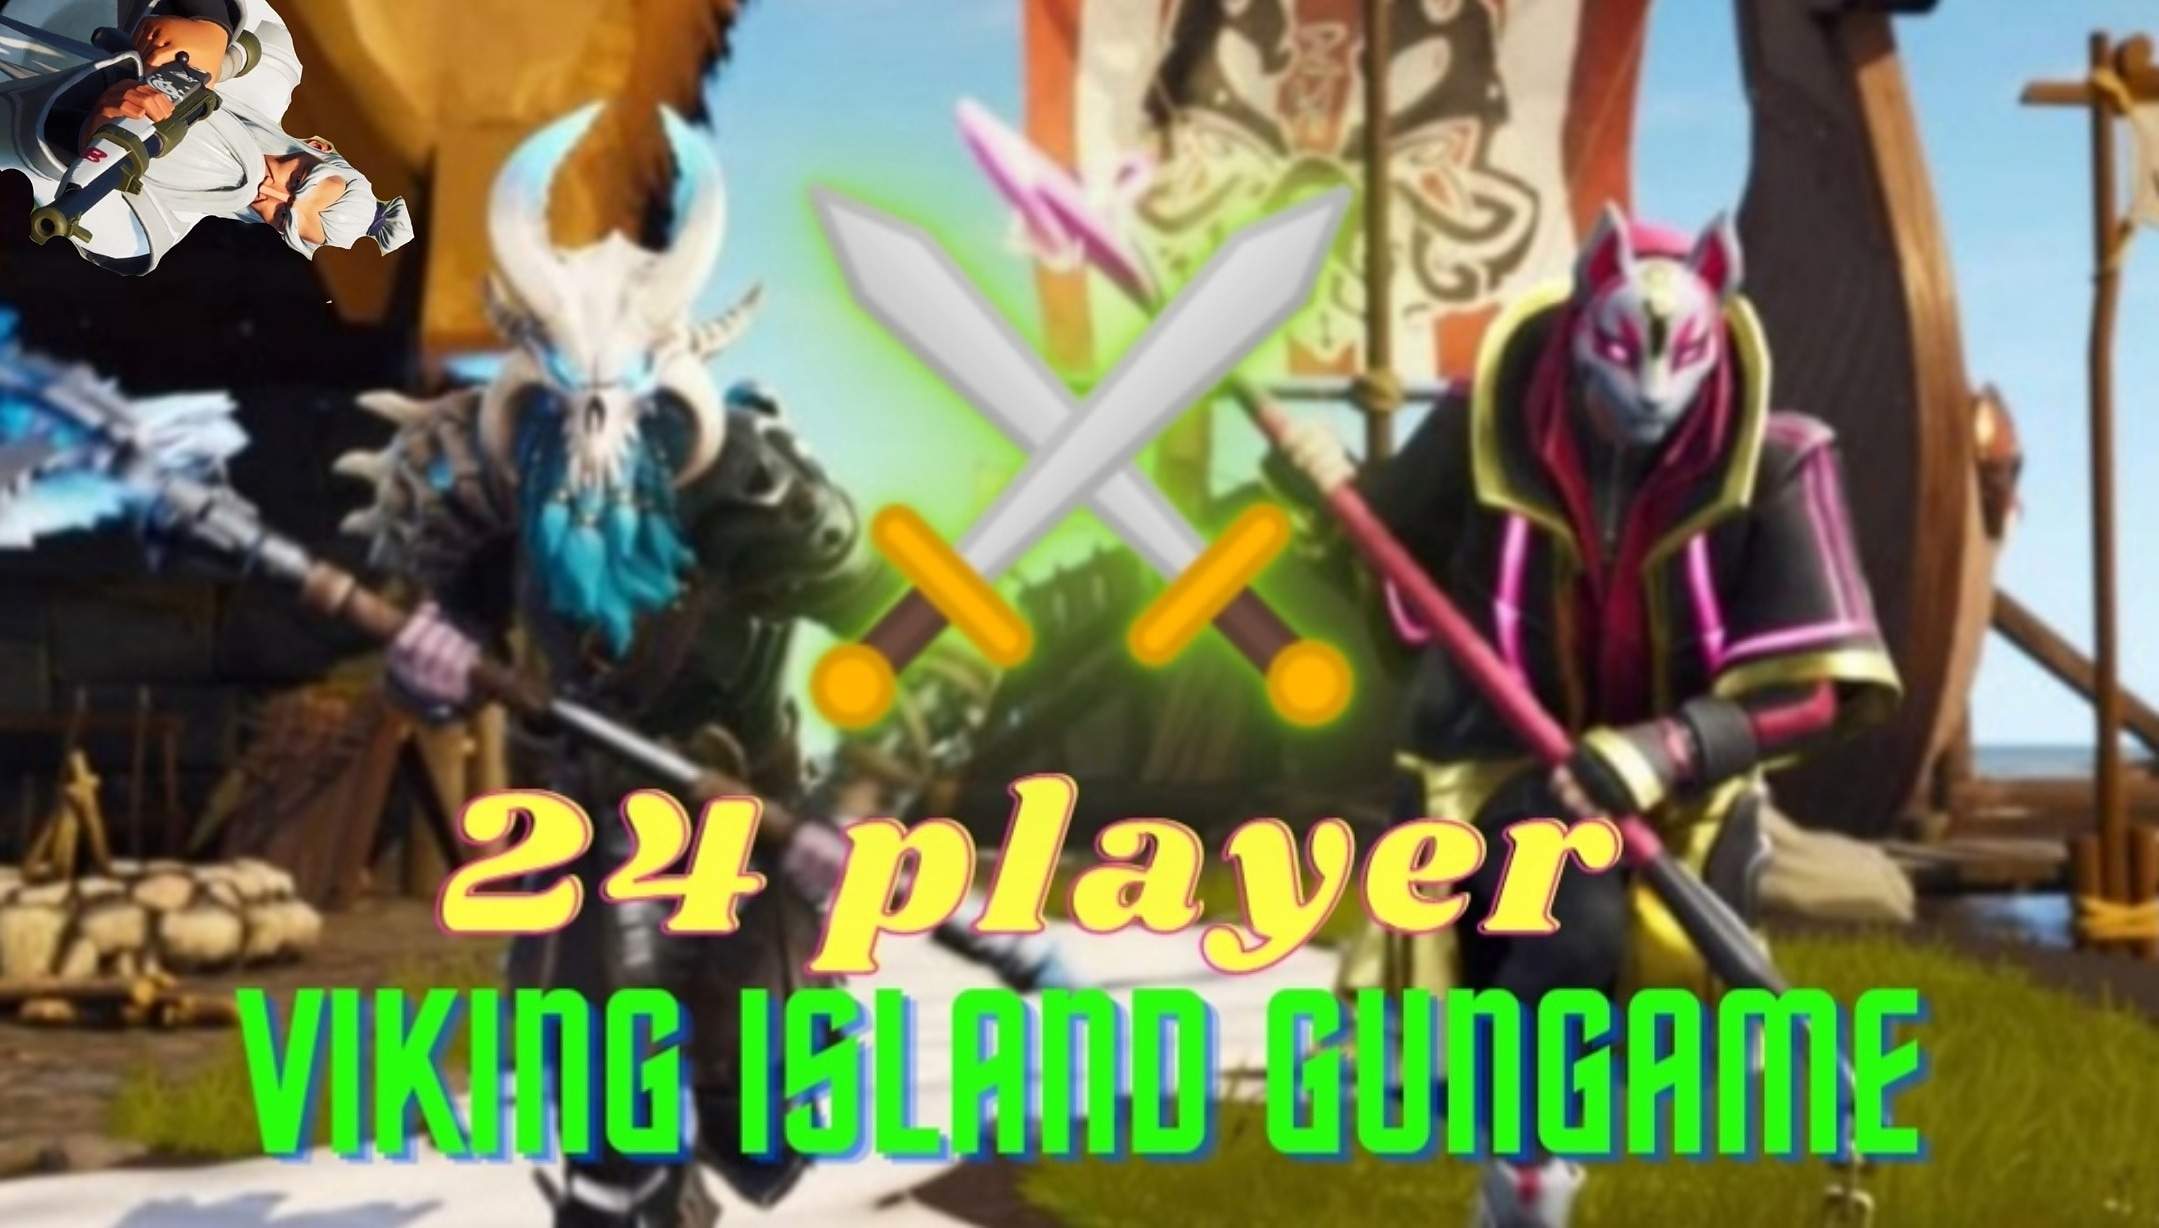 24 PLAYER | VIKING ISLAND GUNGAME